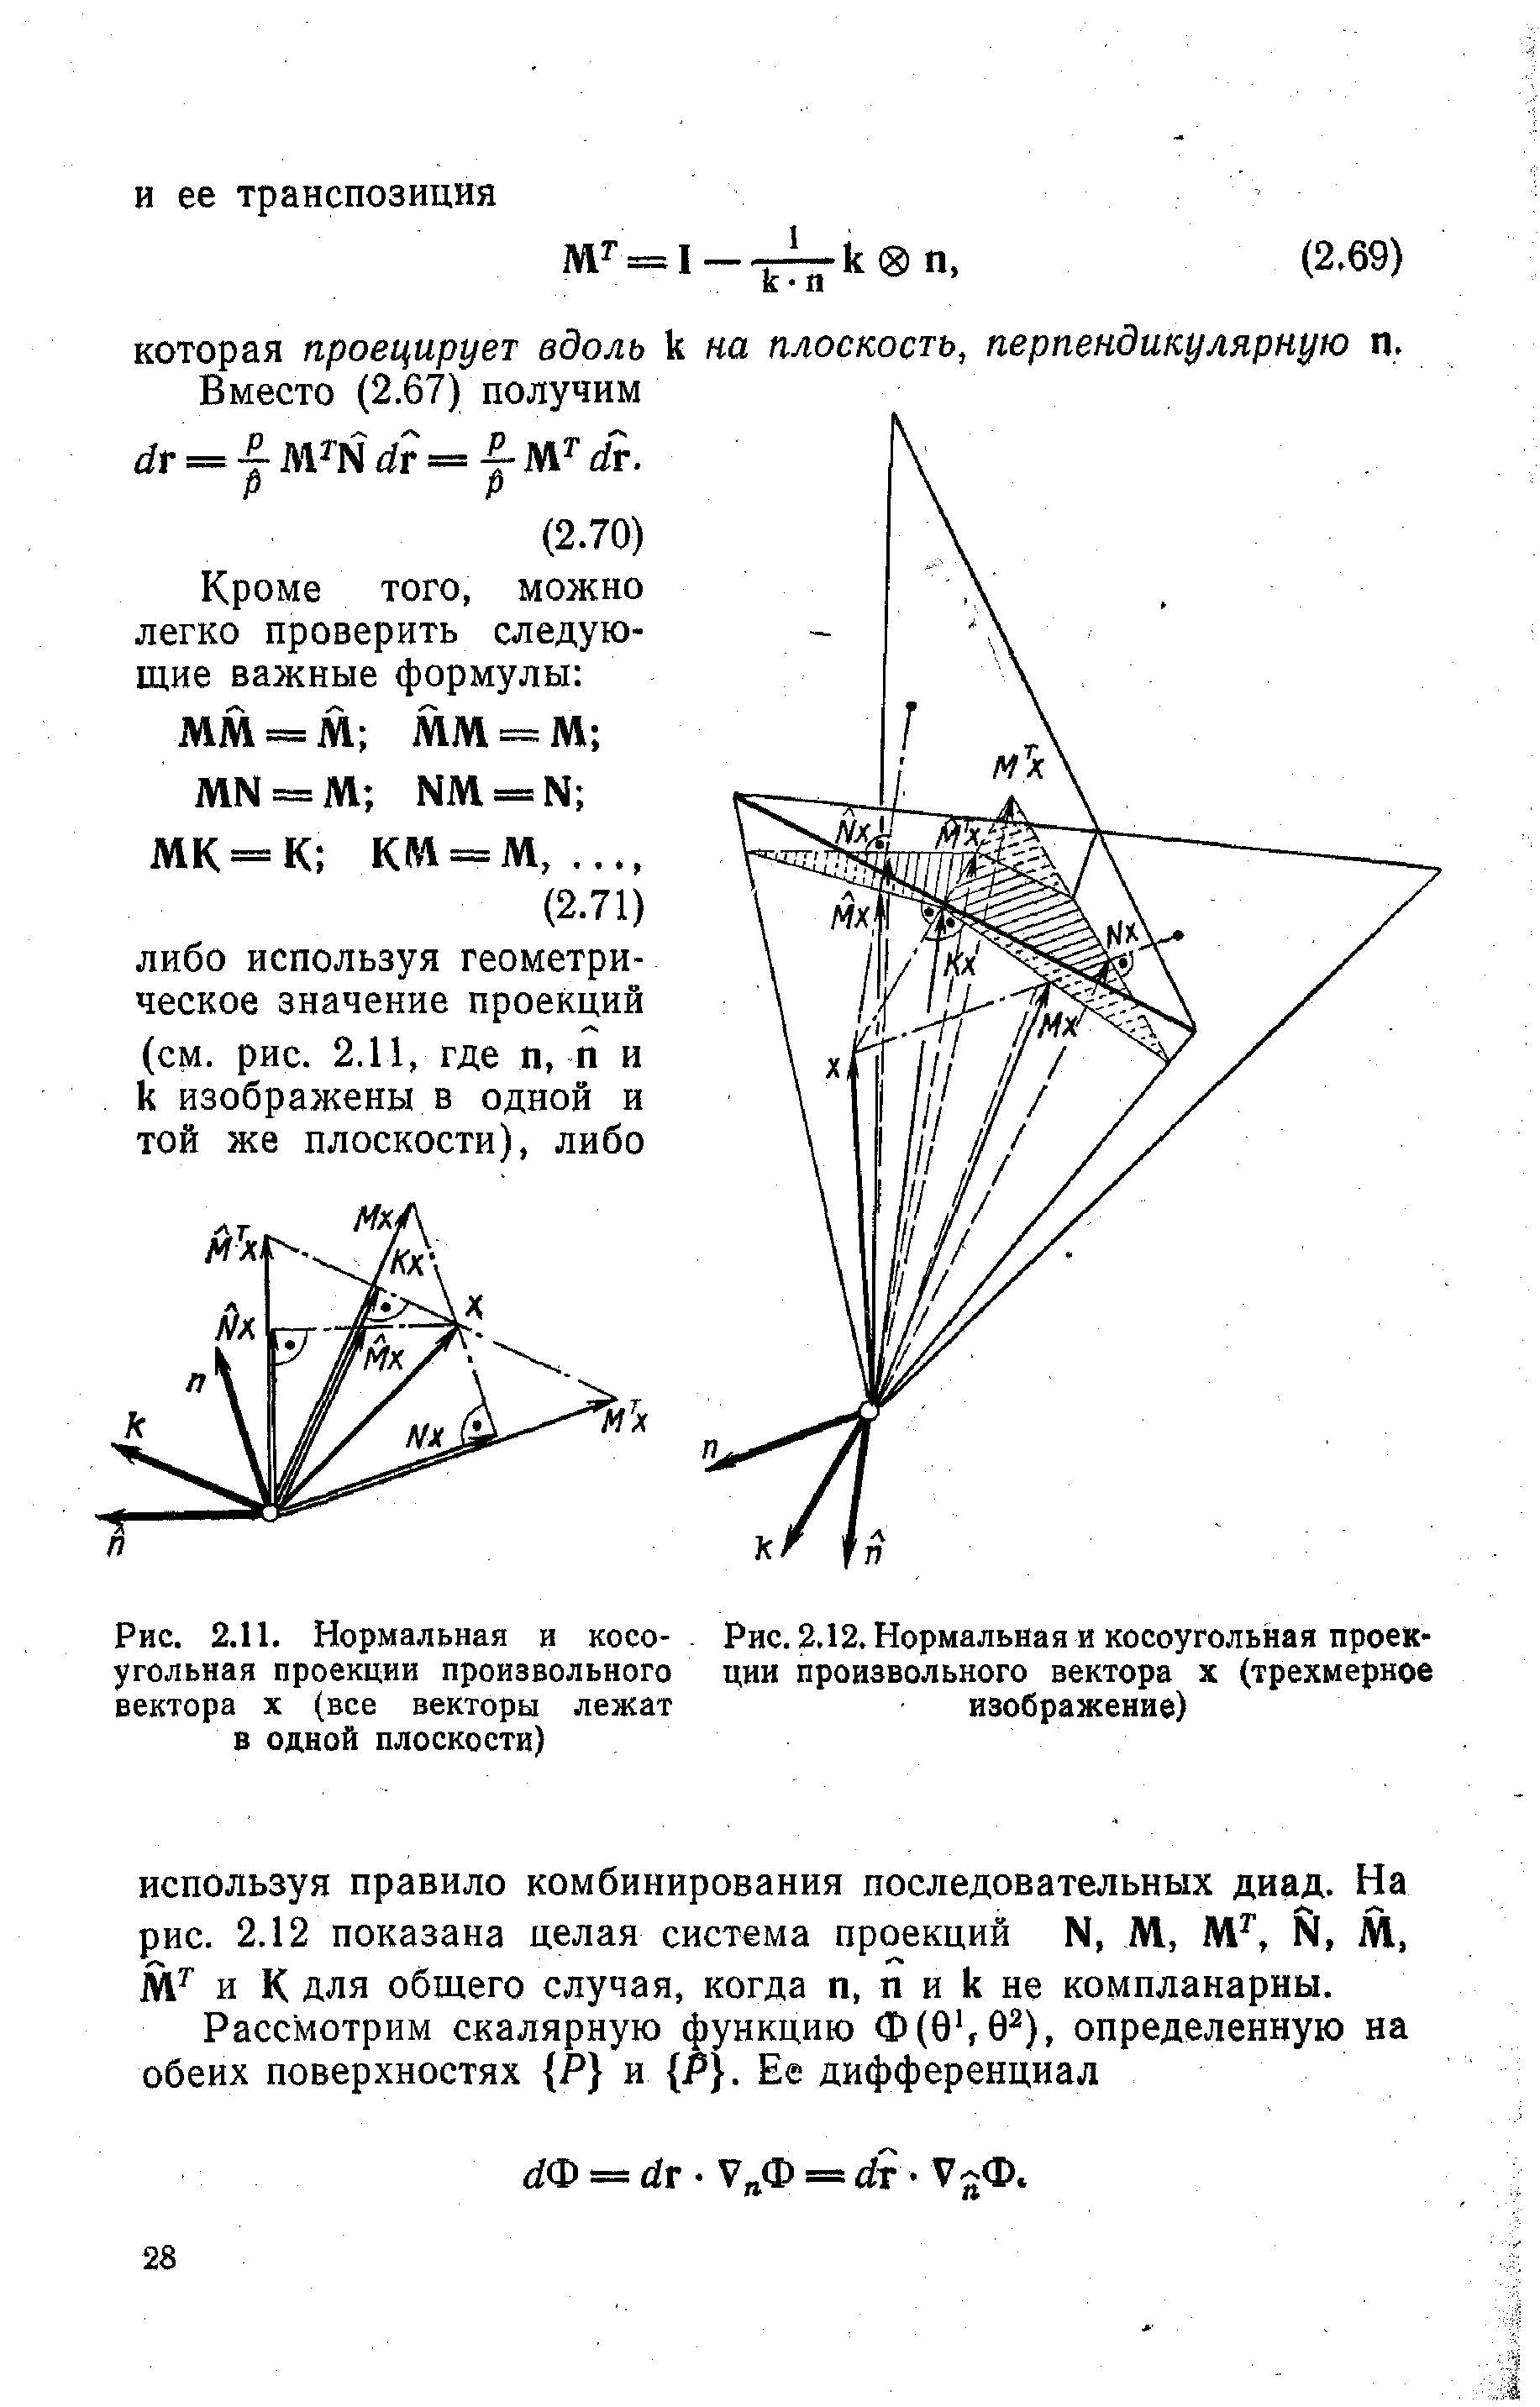 Рис. 2.12. Нормальная и <a href="/info/405326">косоугольная проекции</a> произвольного вектора х (трехмерное изображение)
